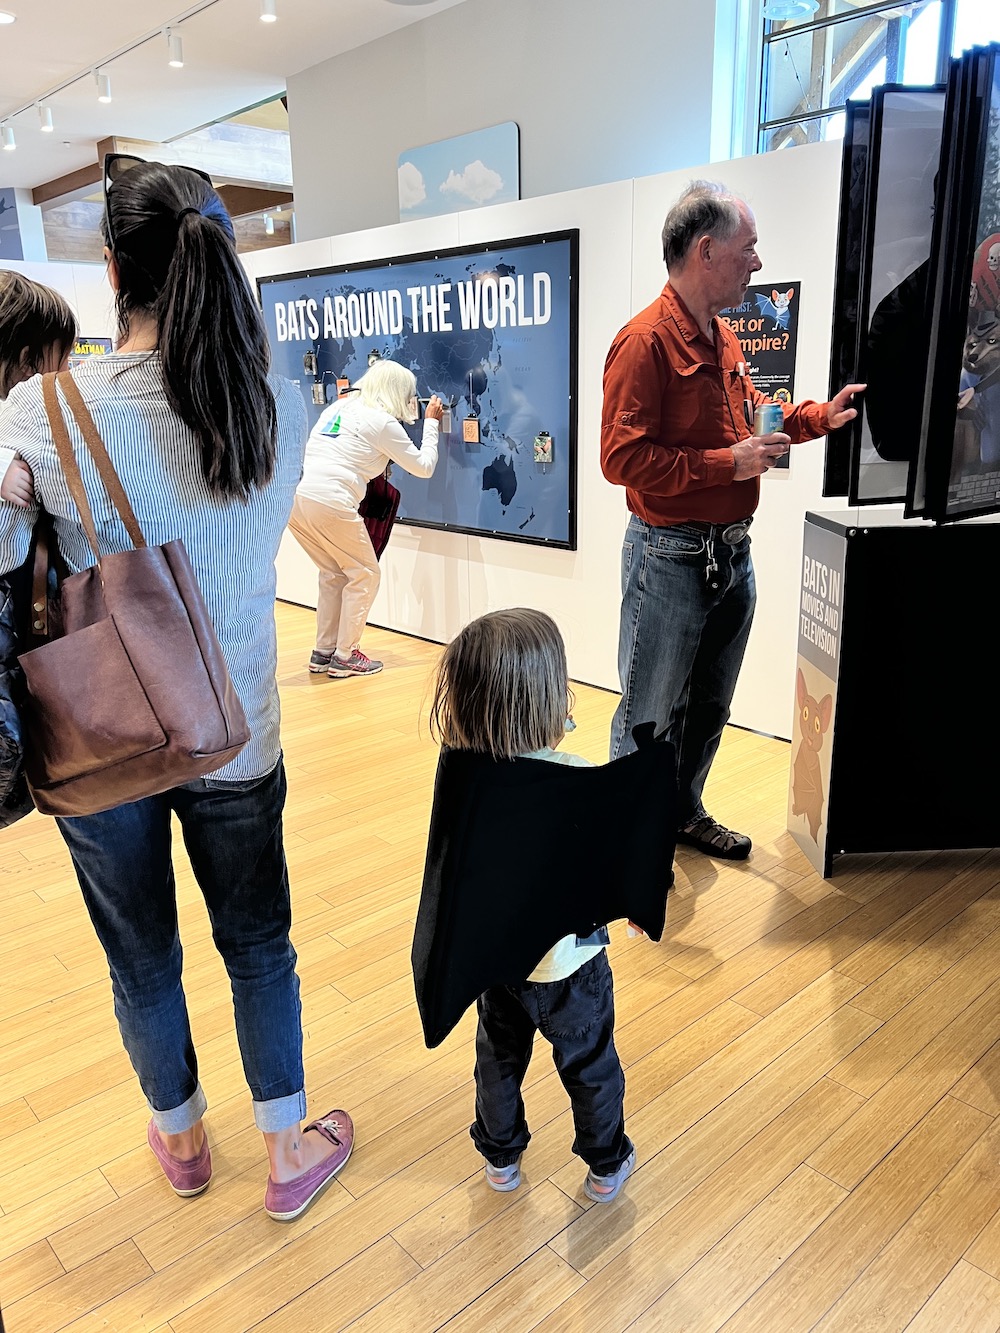 People exploring the exhibit